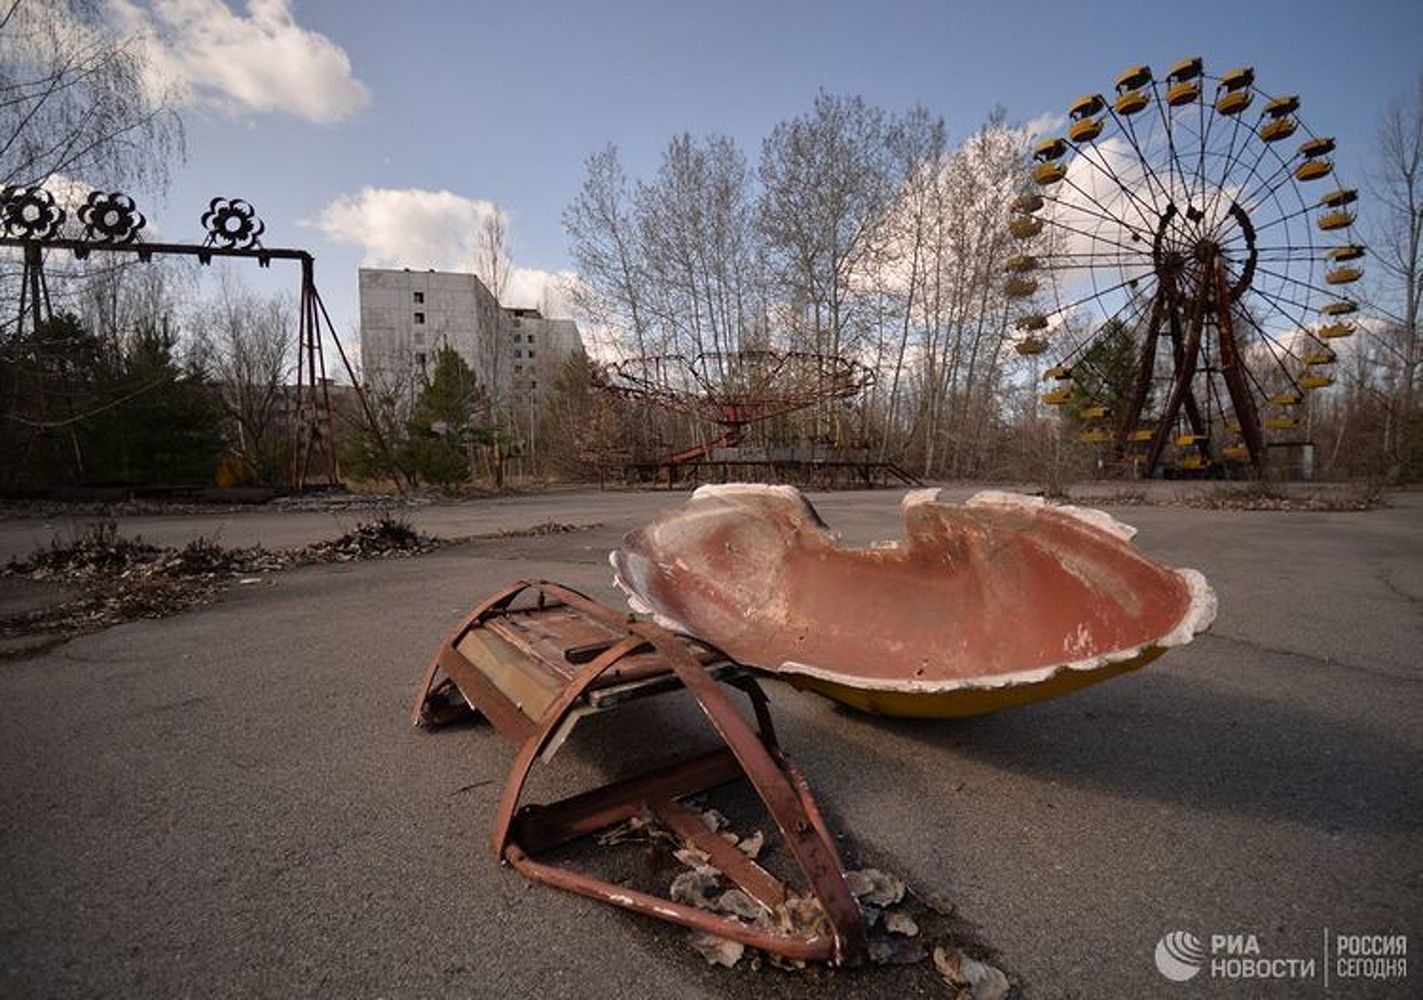 Сериал «Чернобыль» обошел по популярности «Игру престолов» по версии IMDB — Today.kg